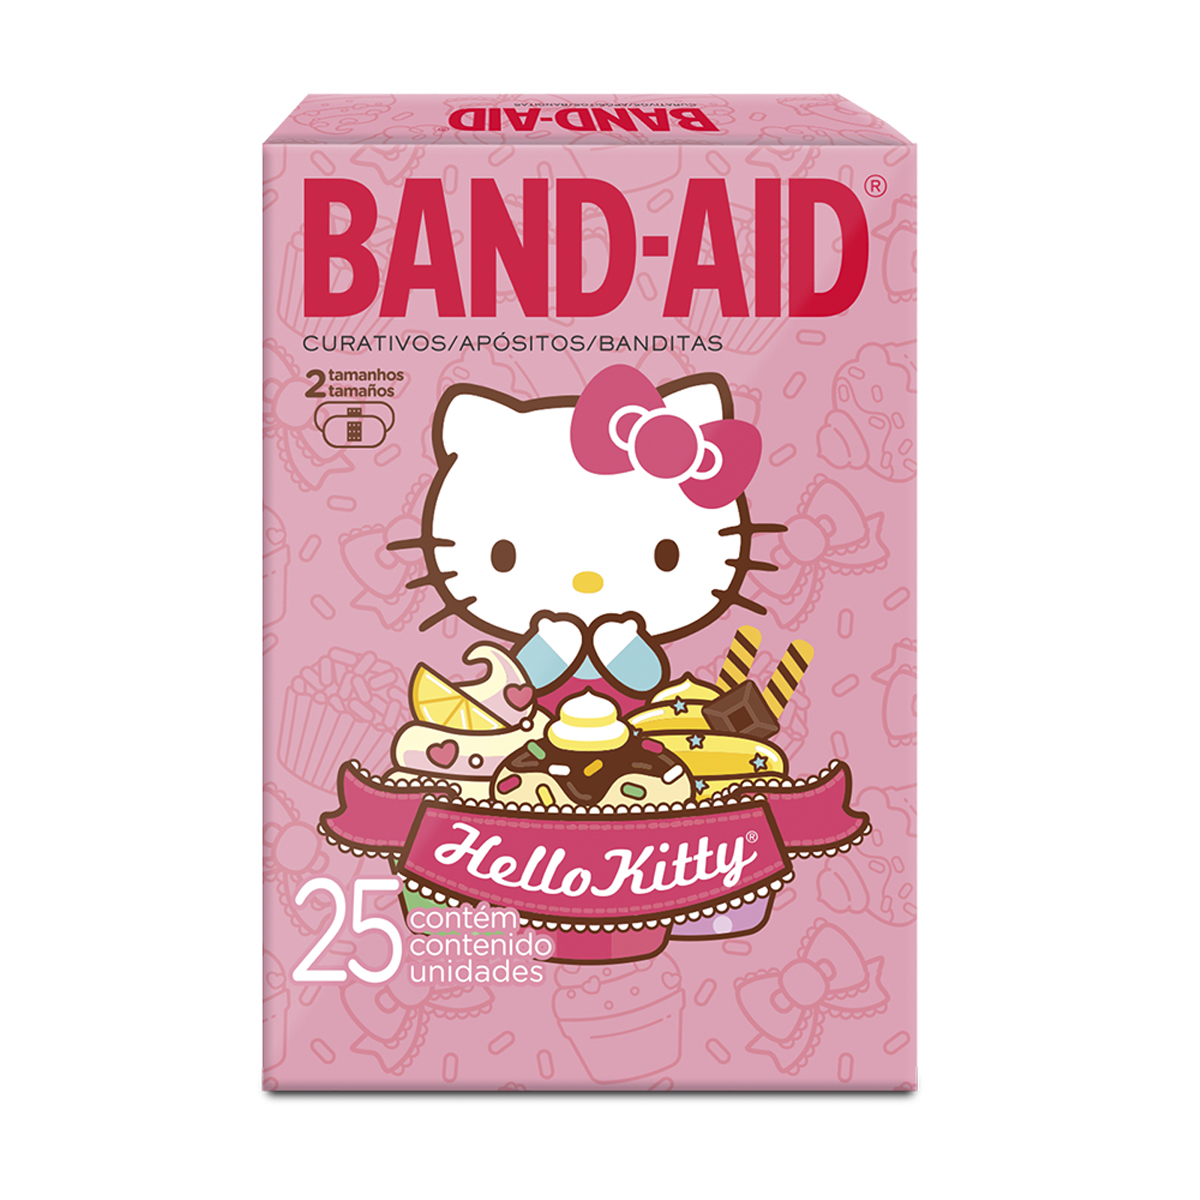 Curativos Band-Aid Hello Kitty 25 unidades